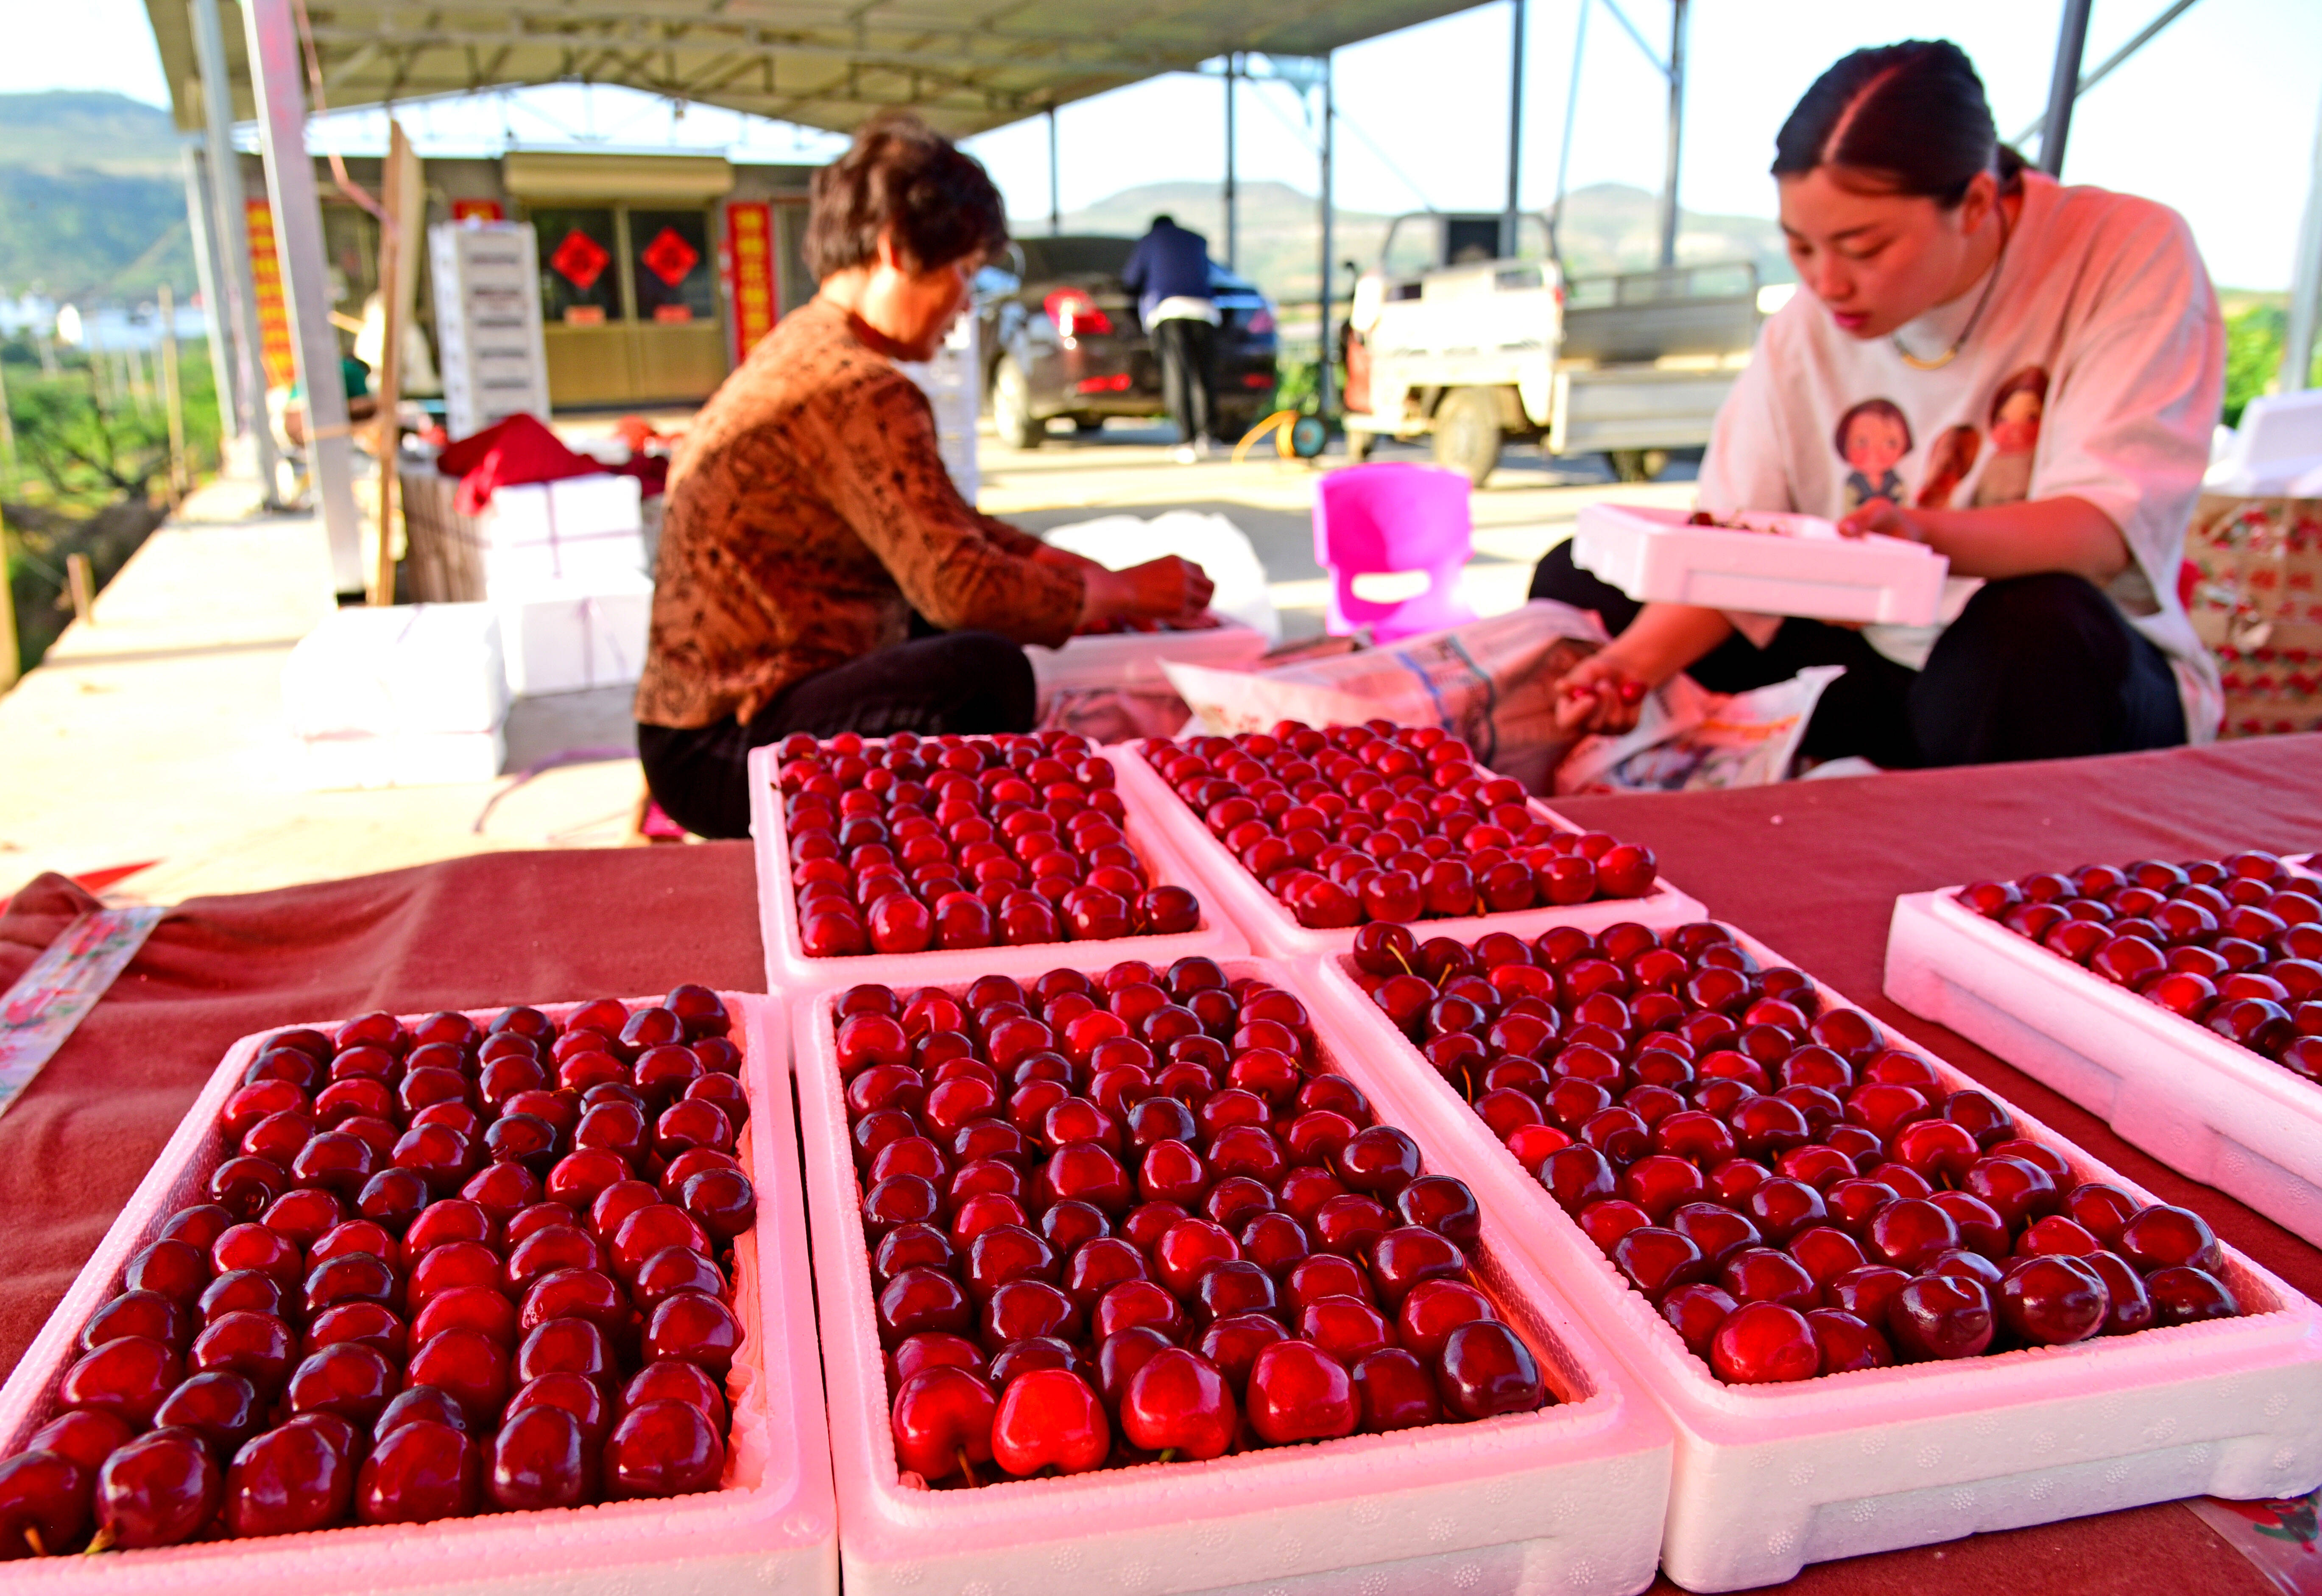 又到樱桃成熟时！枣庄山亭区水泉镇8万亩樱桃进入收获季节